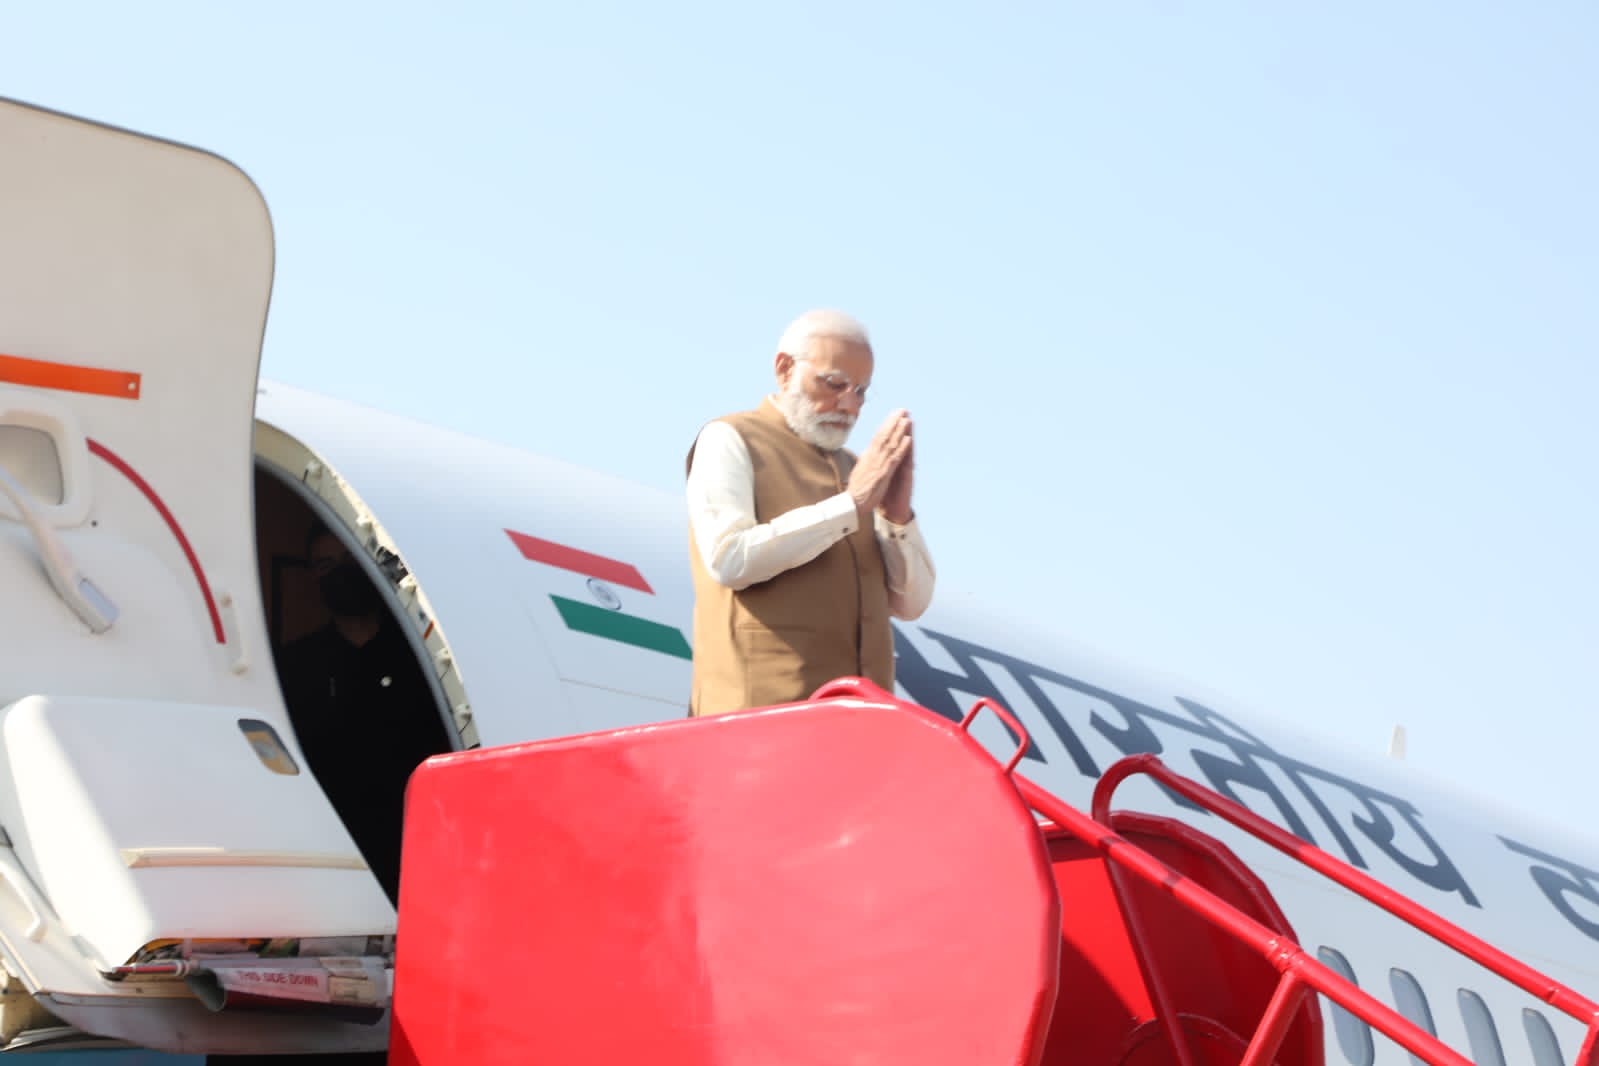 प्रधानमंत्री नरेंद्र मोदी भोपाल में ​​​​​​​करेंगे कमांडर्स कॉन्फ्रेंस, देश की 11वीं वंदे भारत ट्रेन को हरी झंडी दिखाएंगे, देखिये PM का पूरा मिनट टु मिनट कार्यक्रम